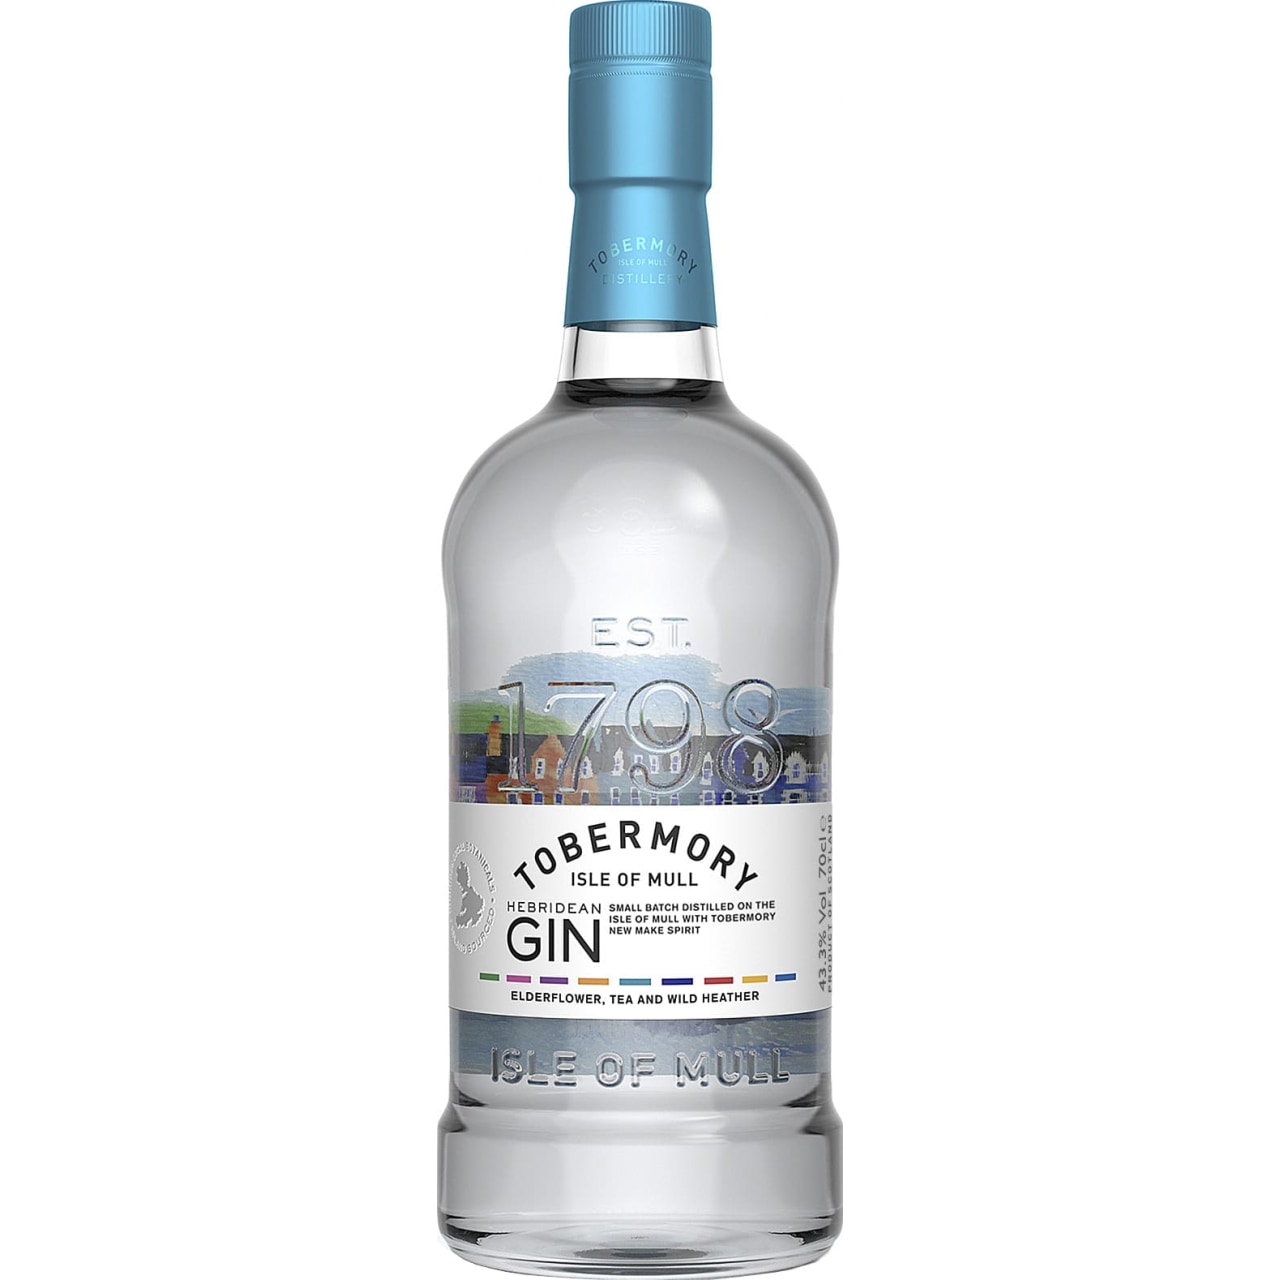 Tobermory Hebridean Gin